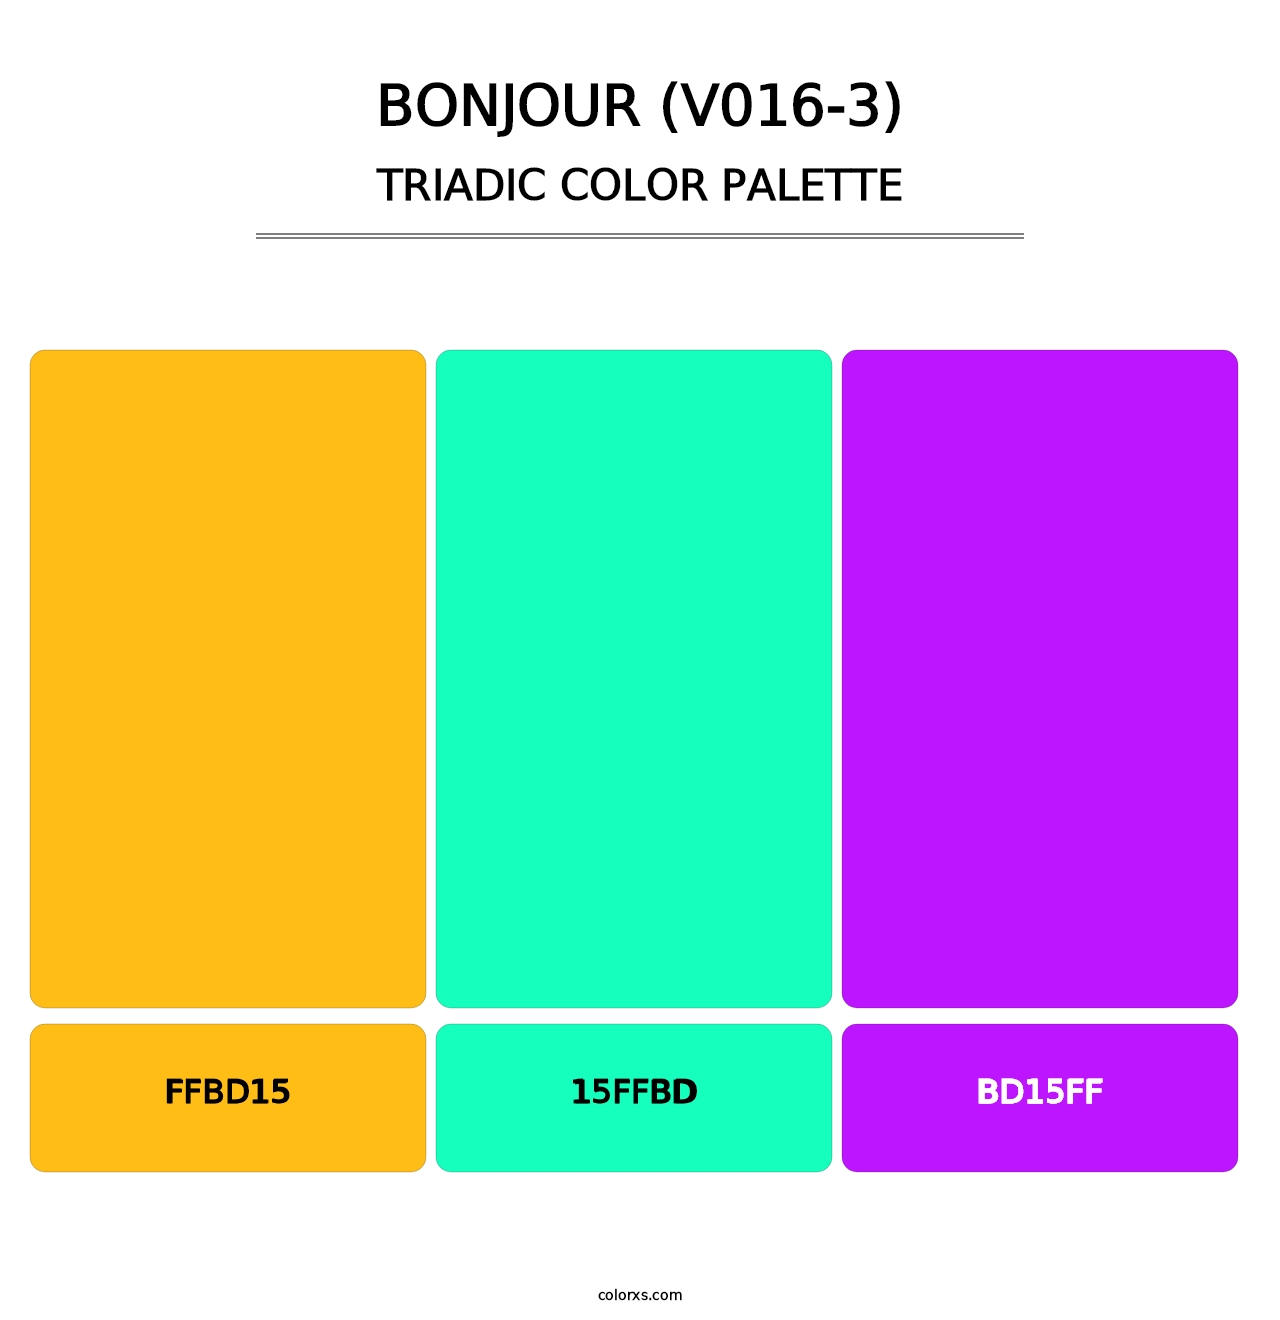 Bonjour (V016-3) - Triadic Color Palette